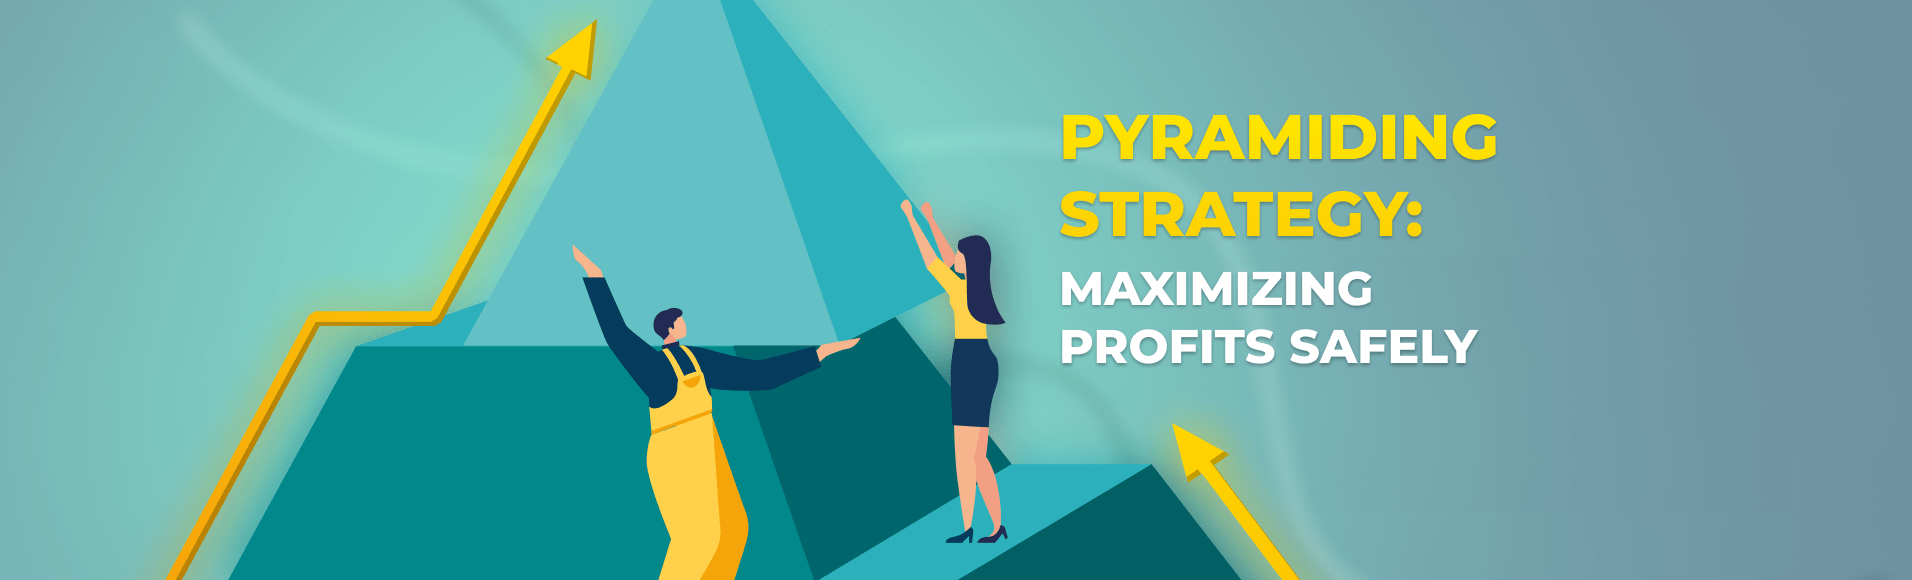 Pyramiding Strategy: Maximizing Profits Safely